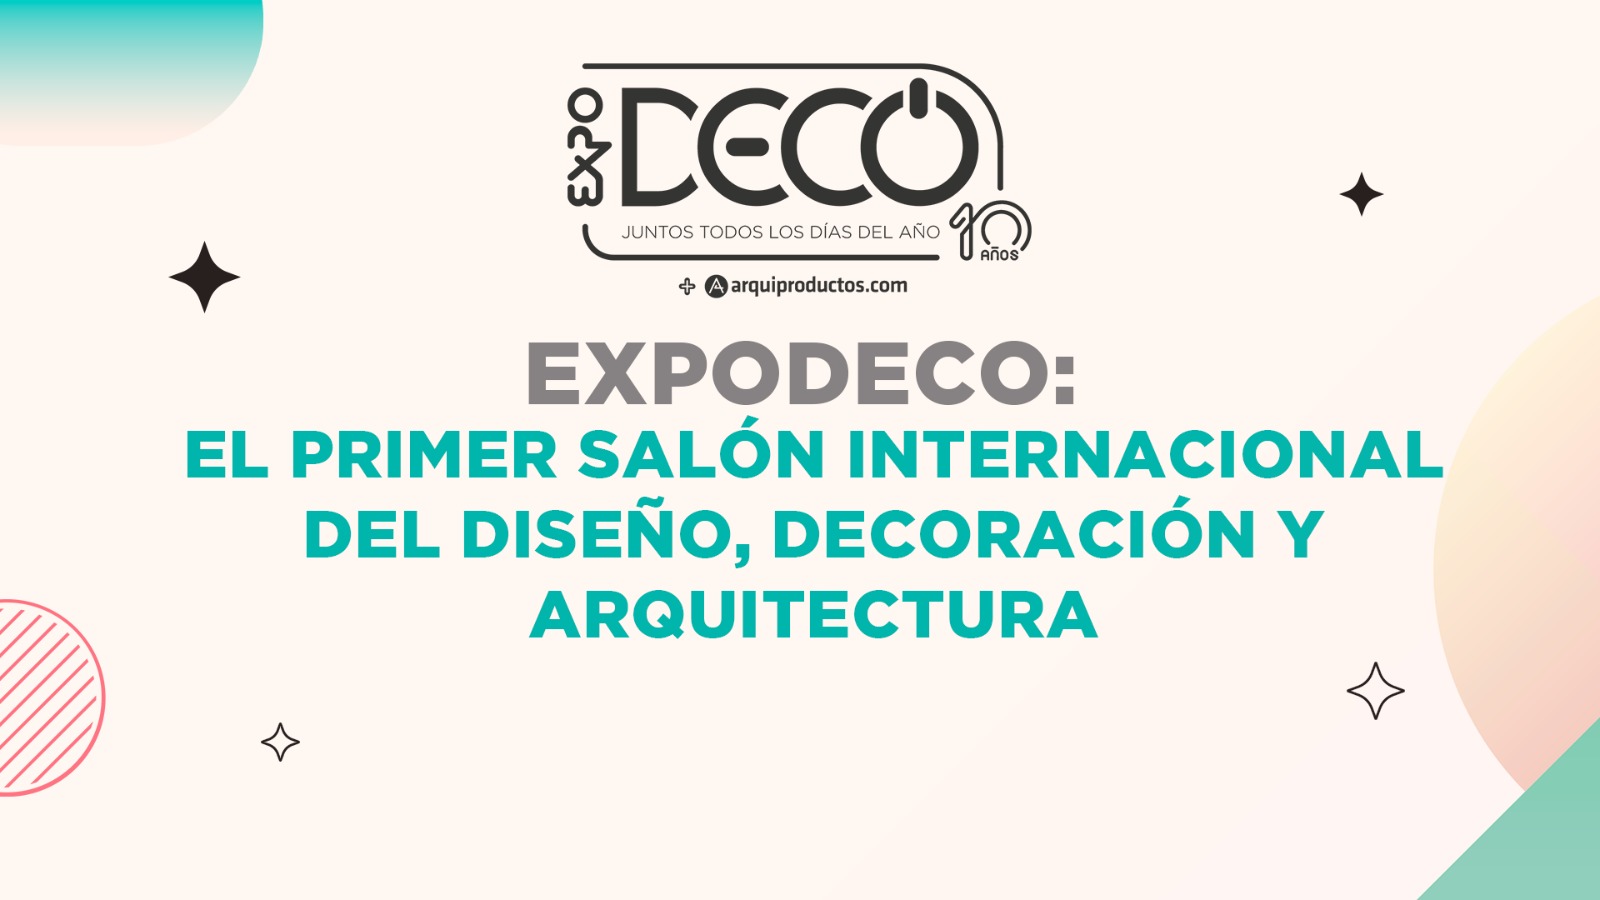 Expodeco es el primer salón Internacional del diseño, decoración y arquitectura